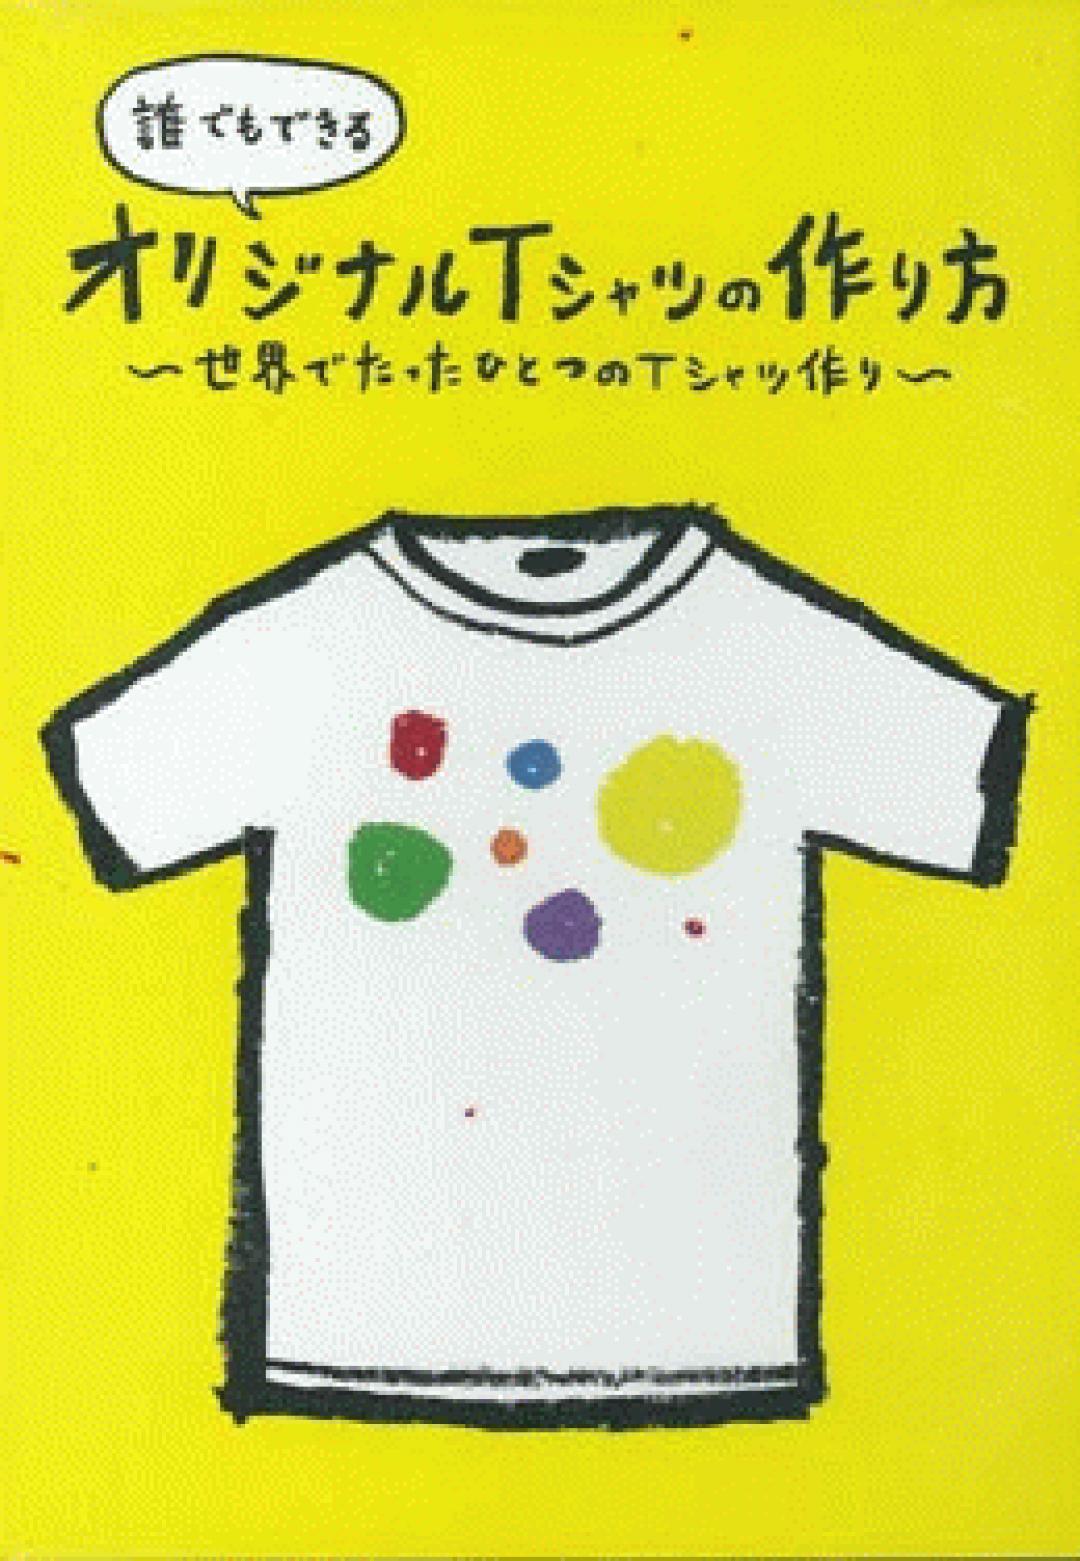 オリジナルtシャツの作り方 Transworld Japan トランスワールドジャパン 株式会社 Peace Combat Fly Magazine Warp